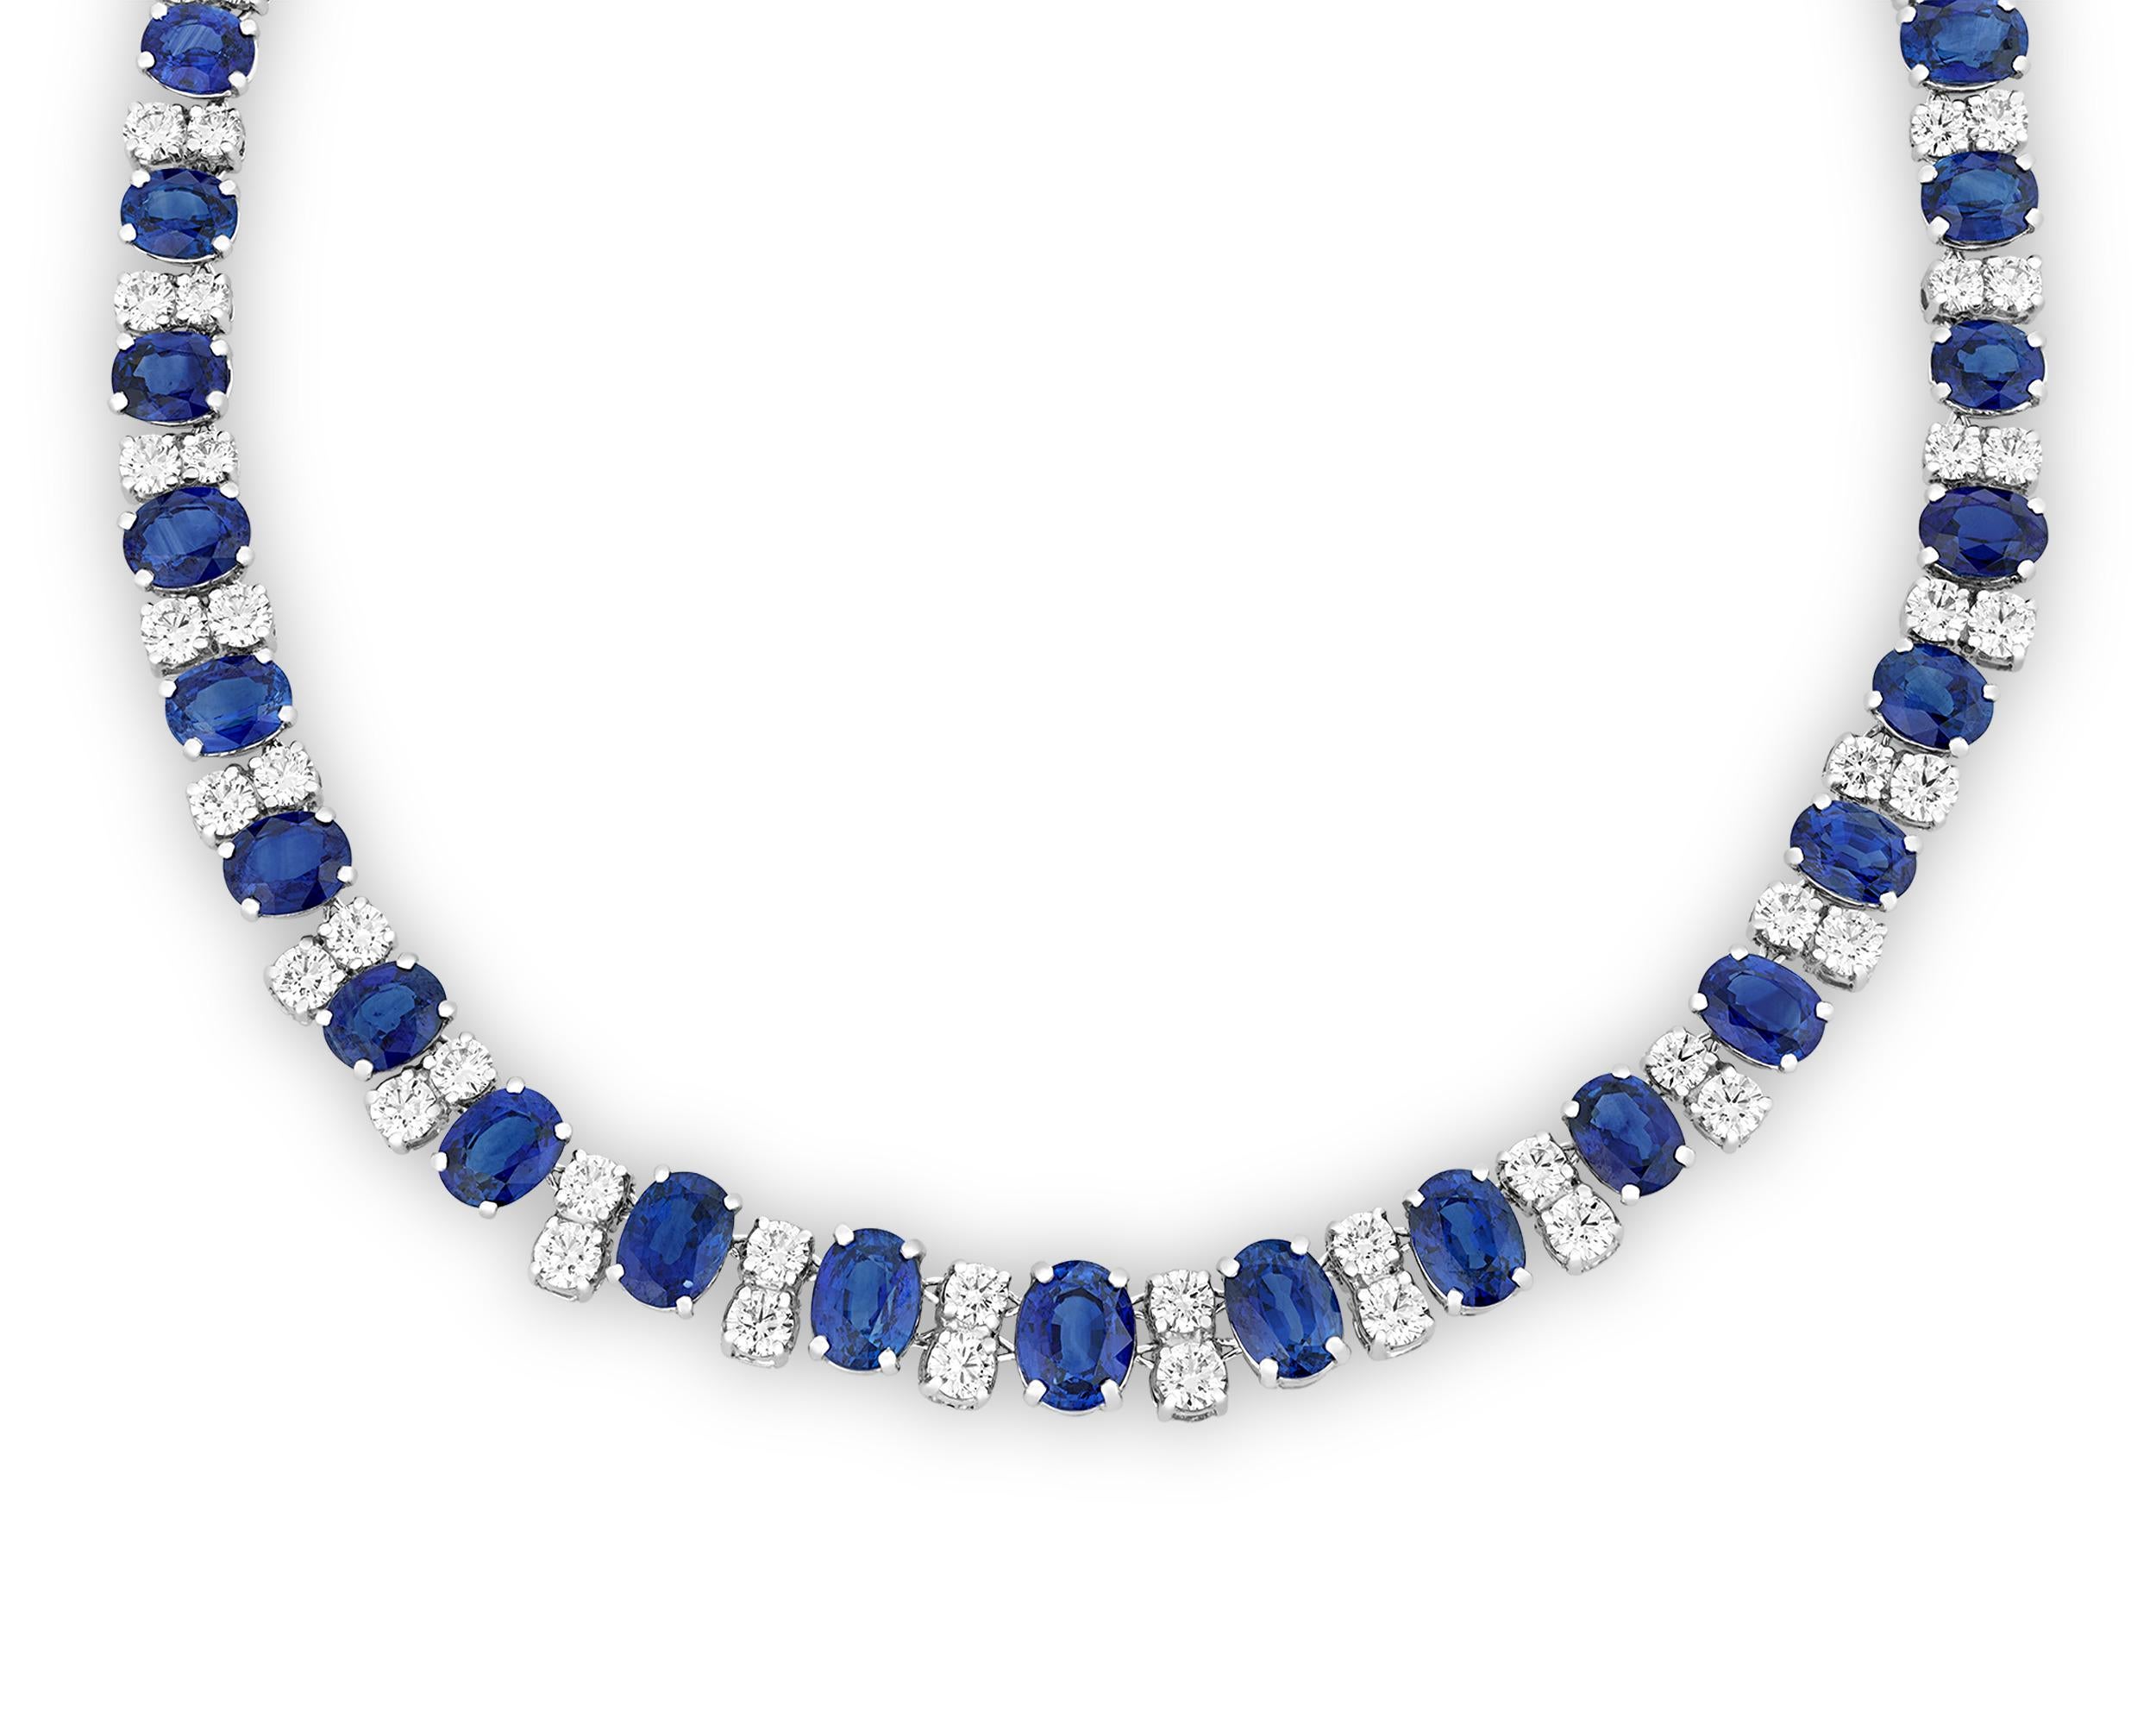 Diese atemberaubende Saphir-Halskette des famosen amerikanischen Juweliers Oscar Heyman ist ein Beispiel für die höchsten Standards des Hauses. Die 42 oval geschliffenen Ceylon-Saphire in dem abgestuften Strang sind perfekt aufeinander abgestimmt